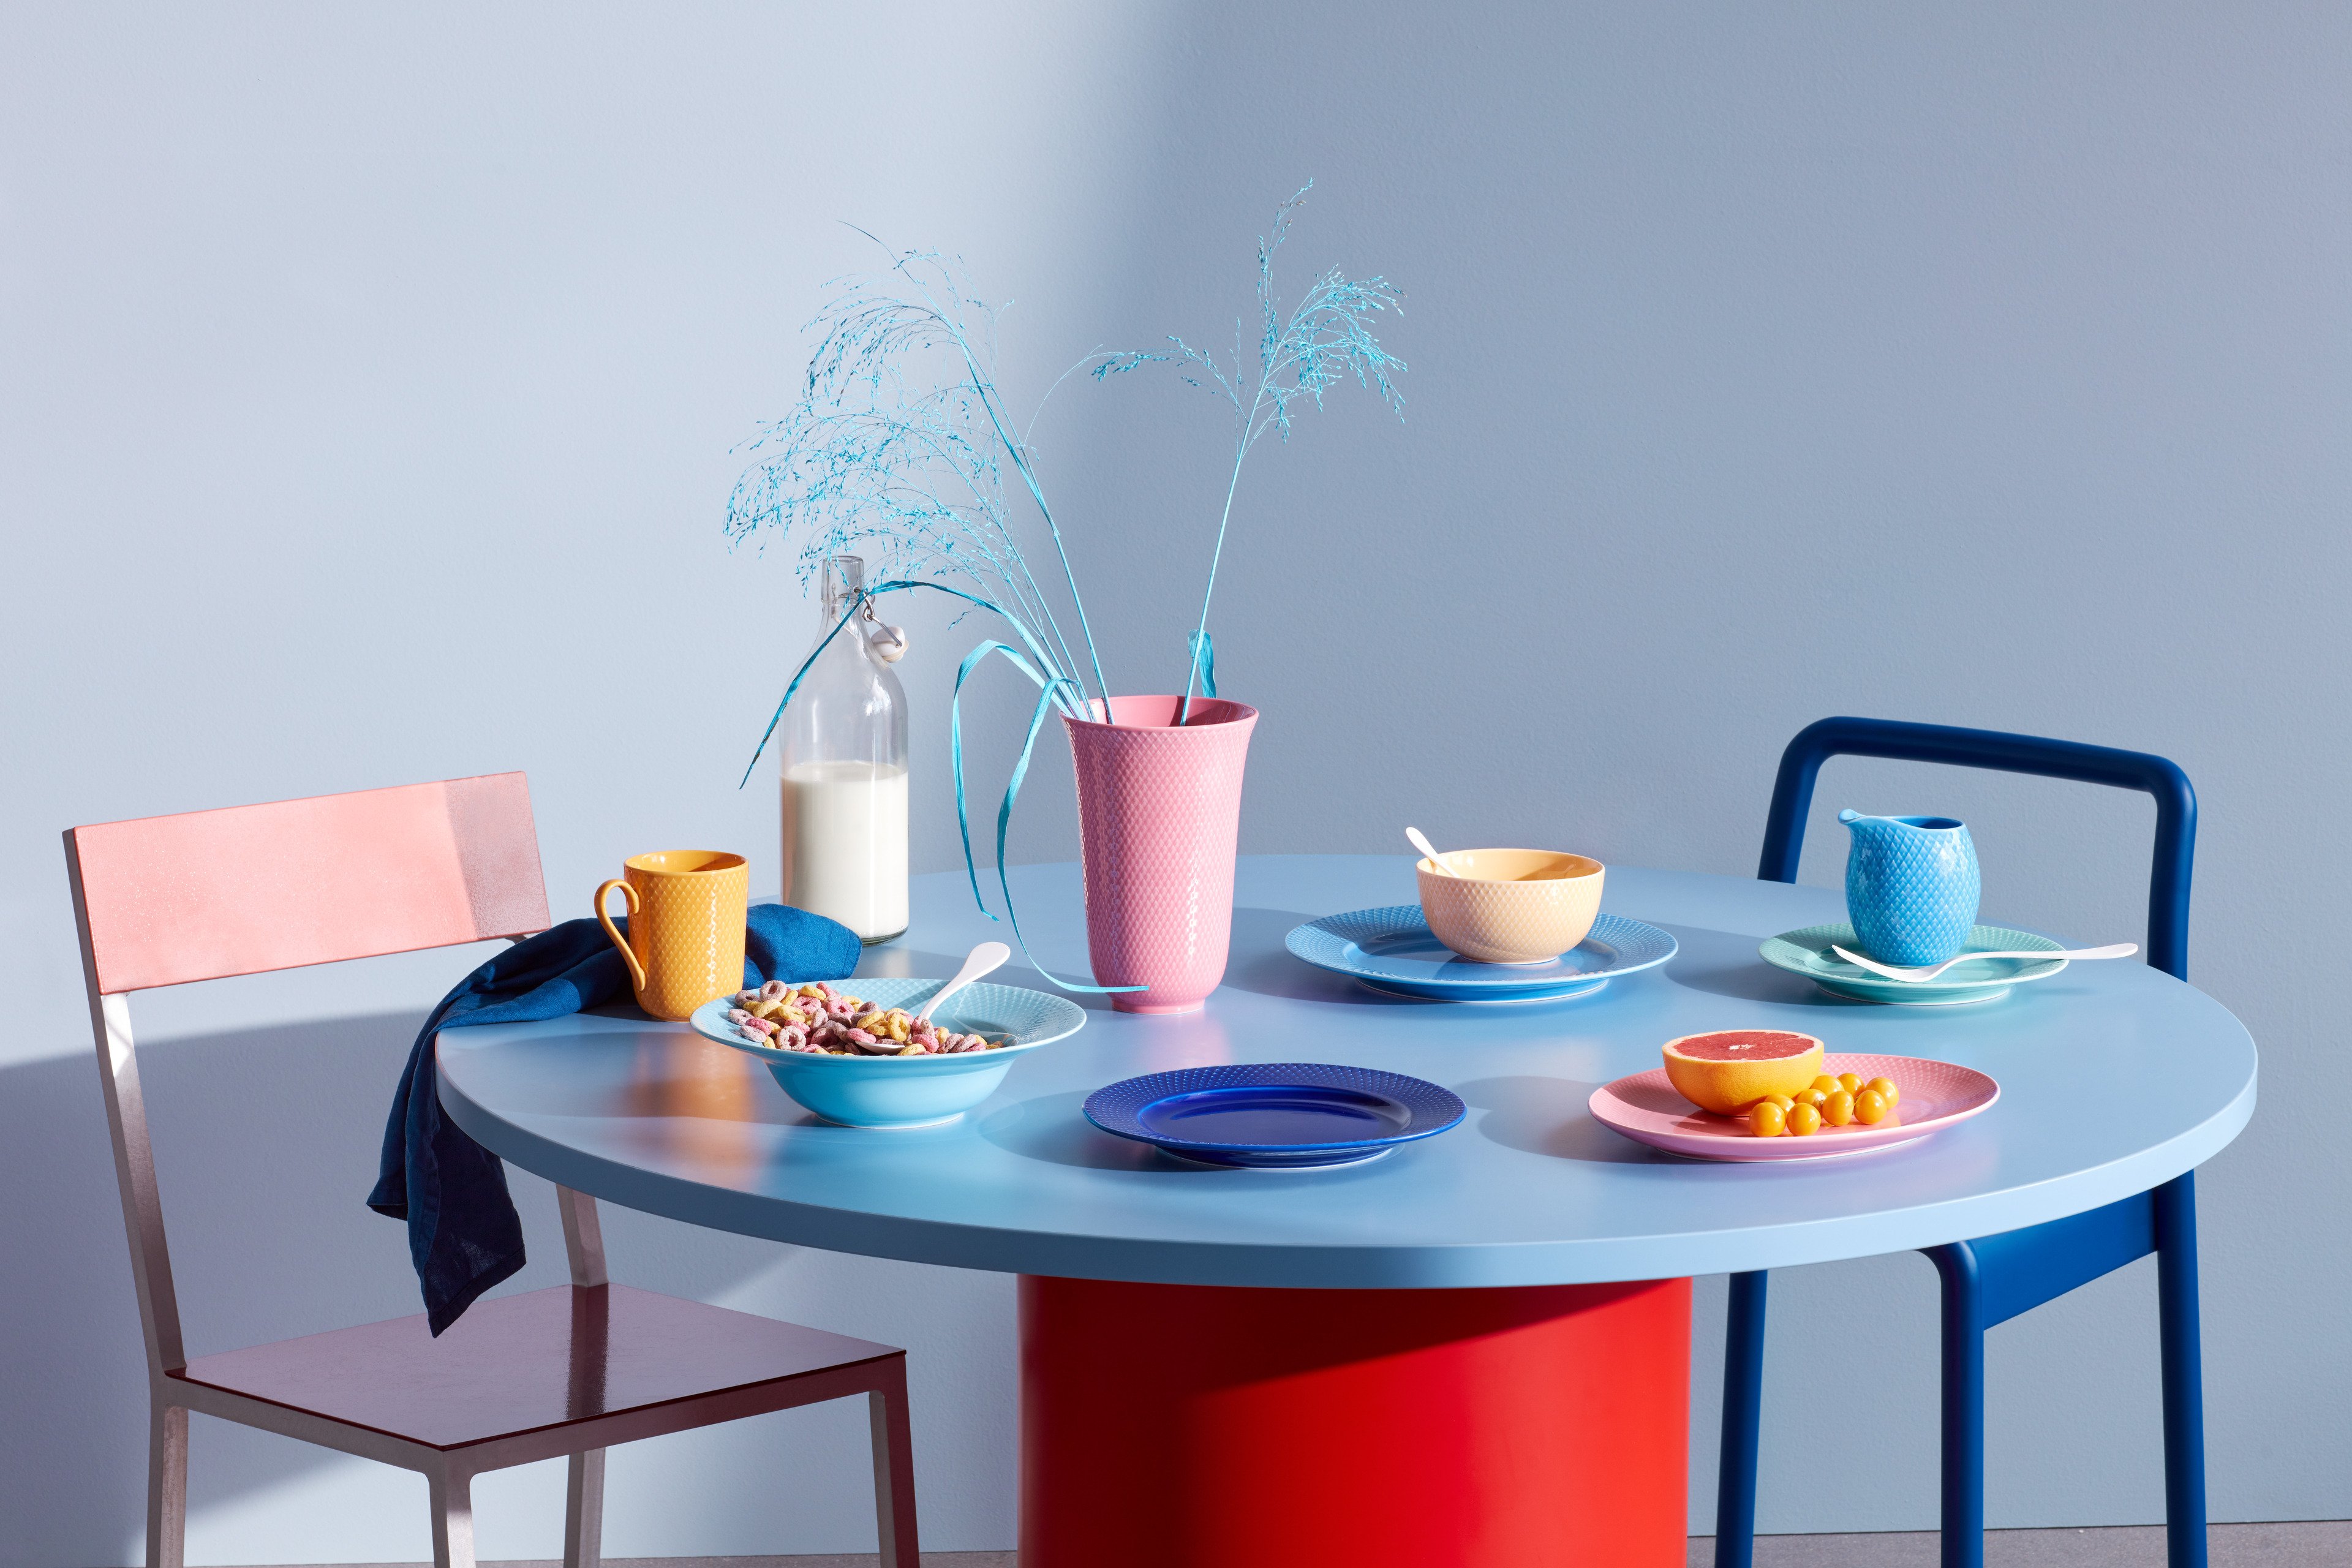 Farbenfrohe Tischdekoration mit Serviceteilen in Rhombe Color von Lyngby Porcelæn